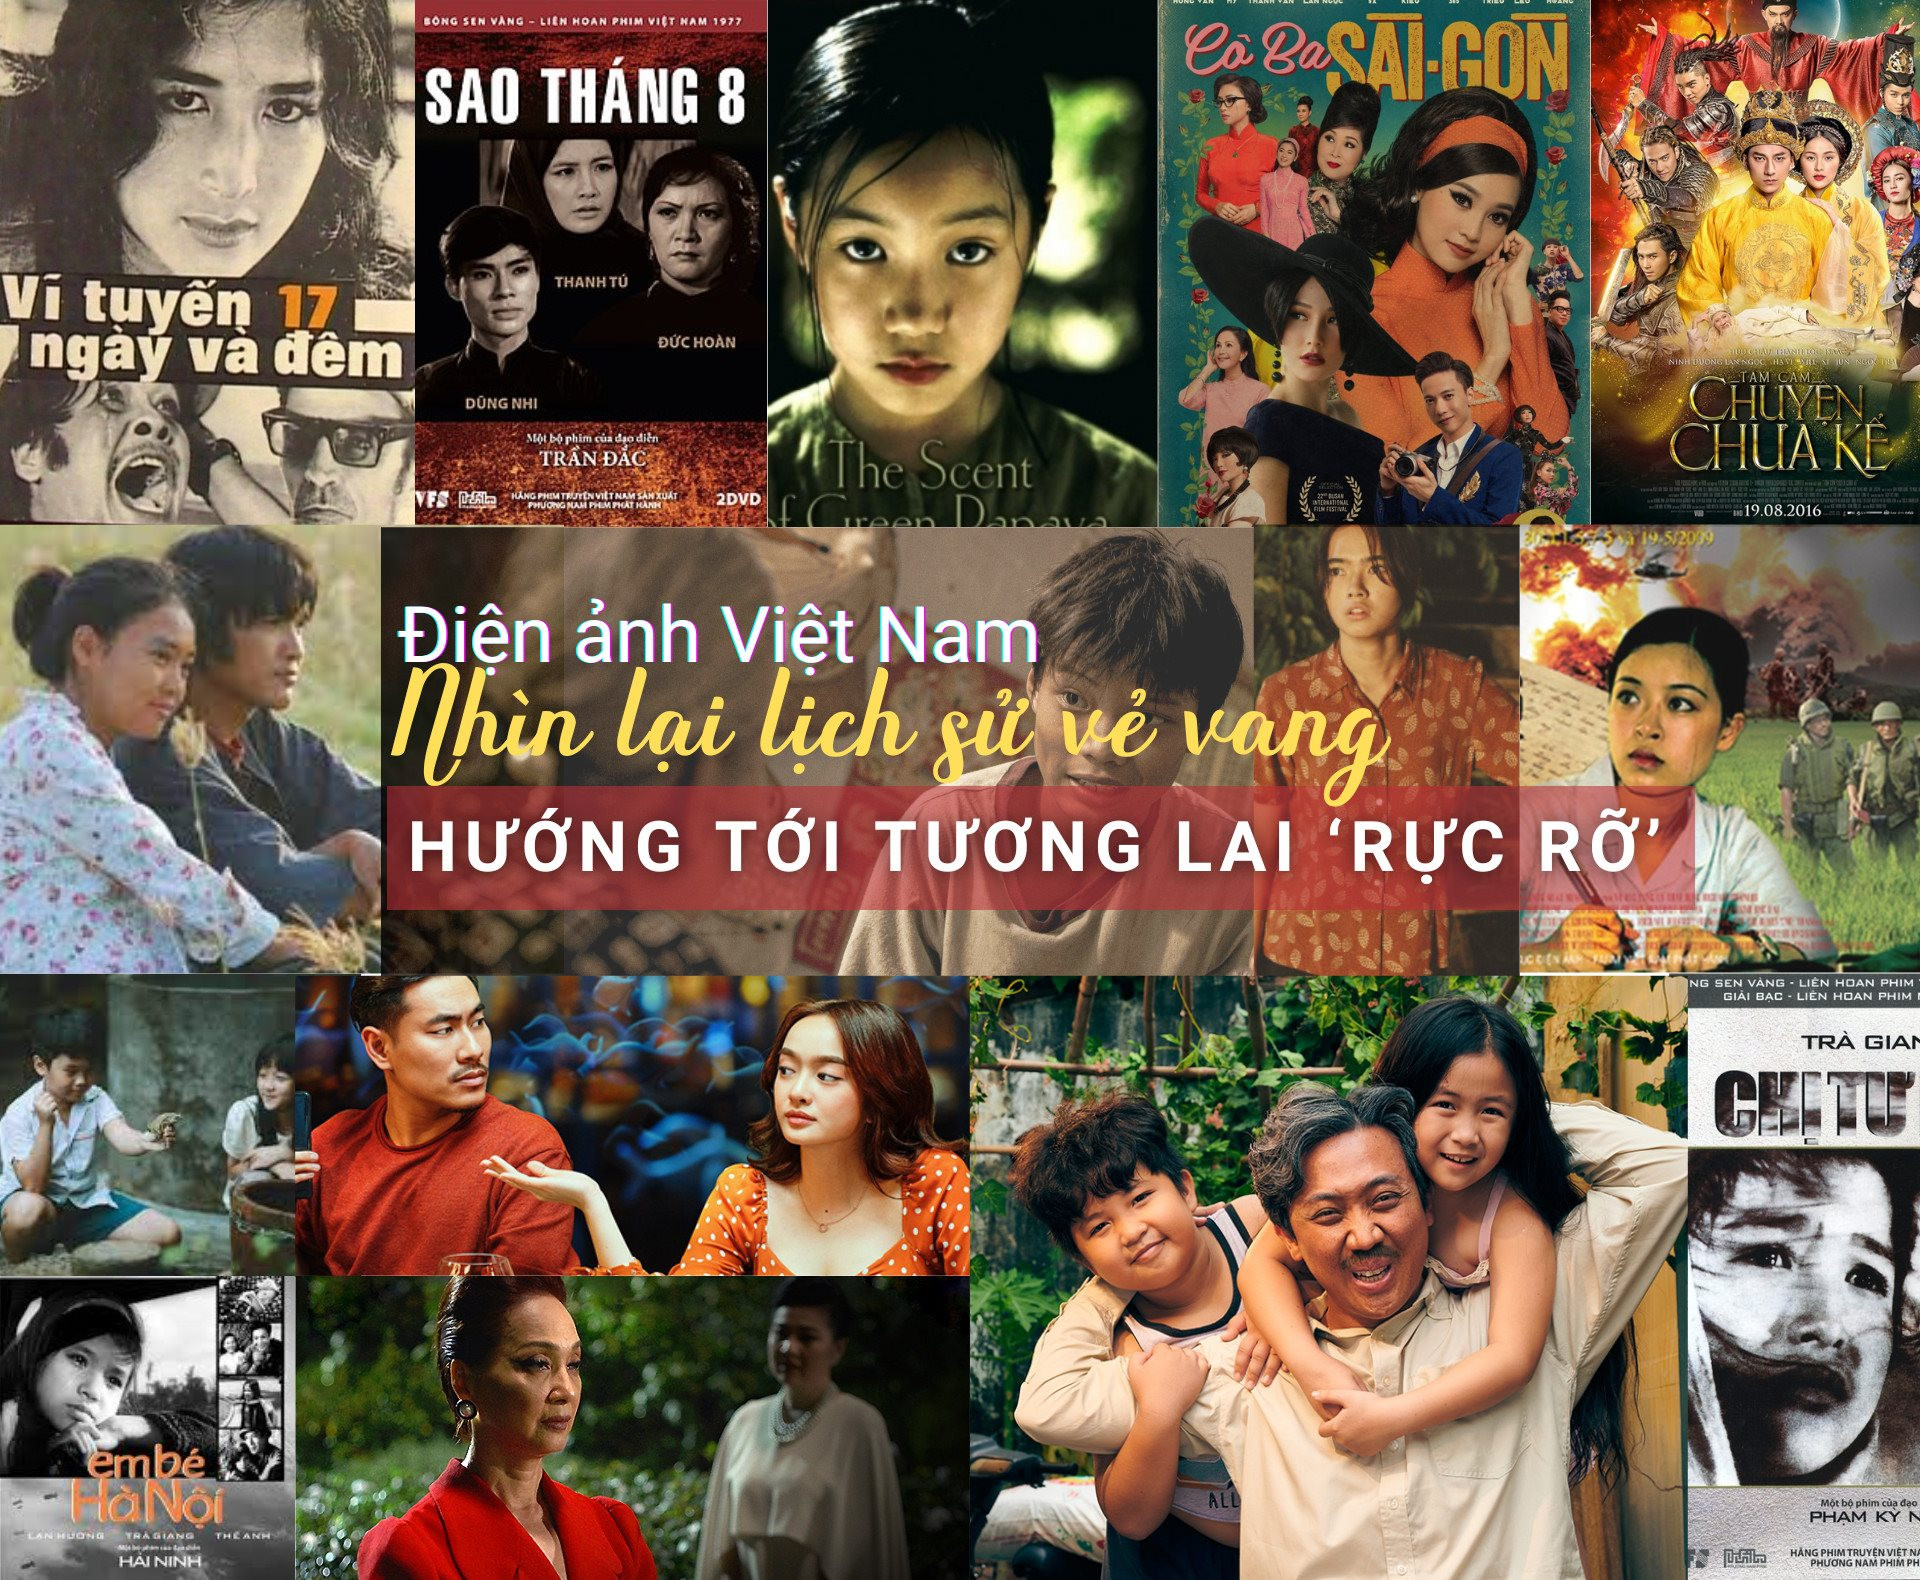 Cùng Chikimo tìm hiểu về cấu tạo máy ảnh phim | 50mm Vietnam